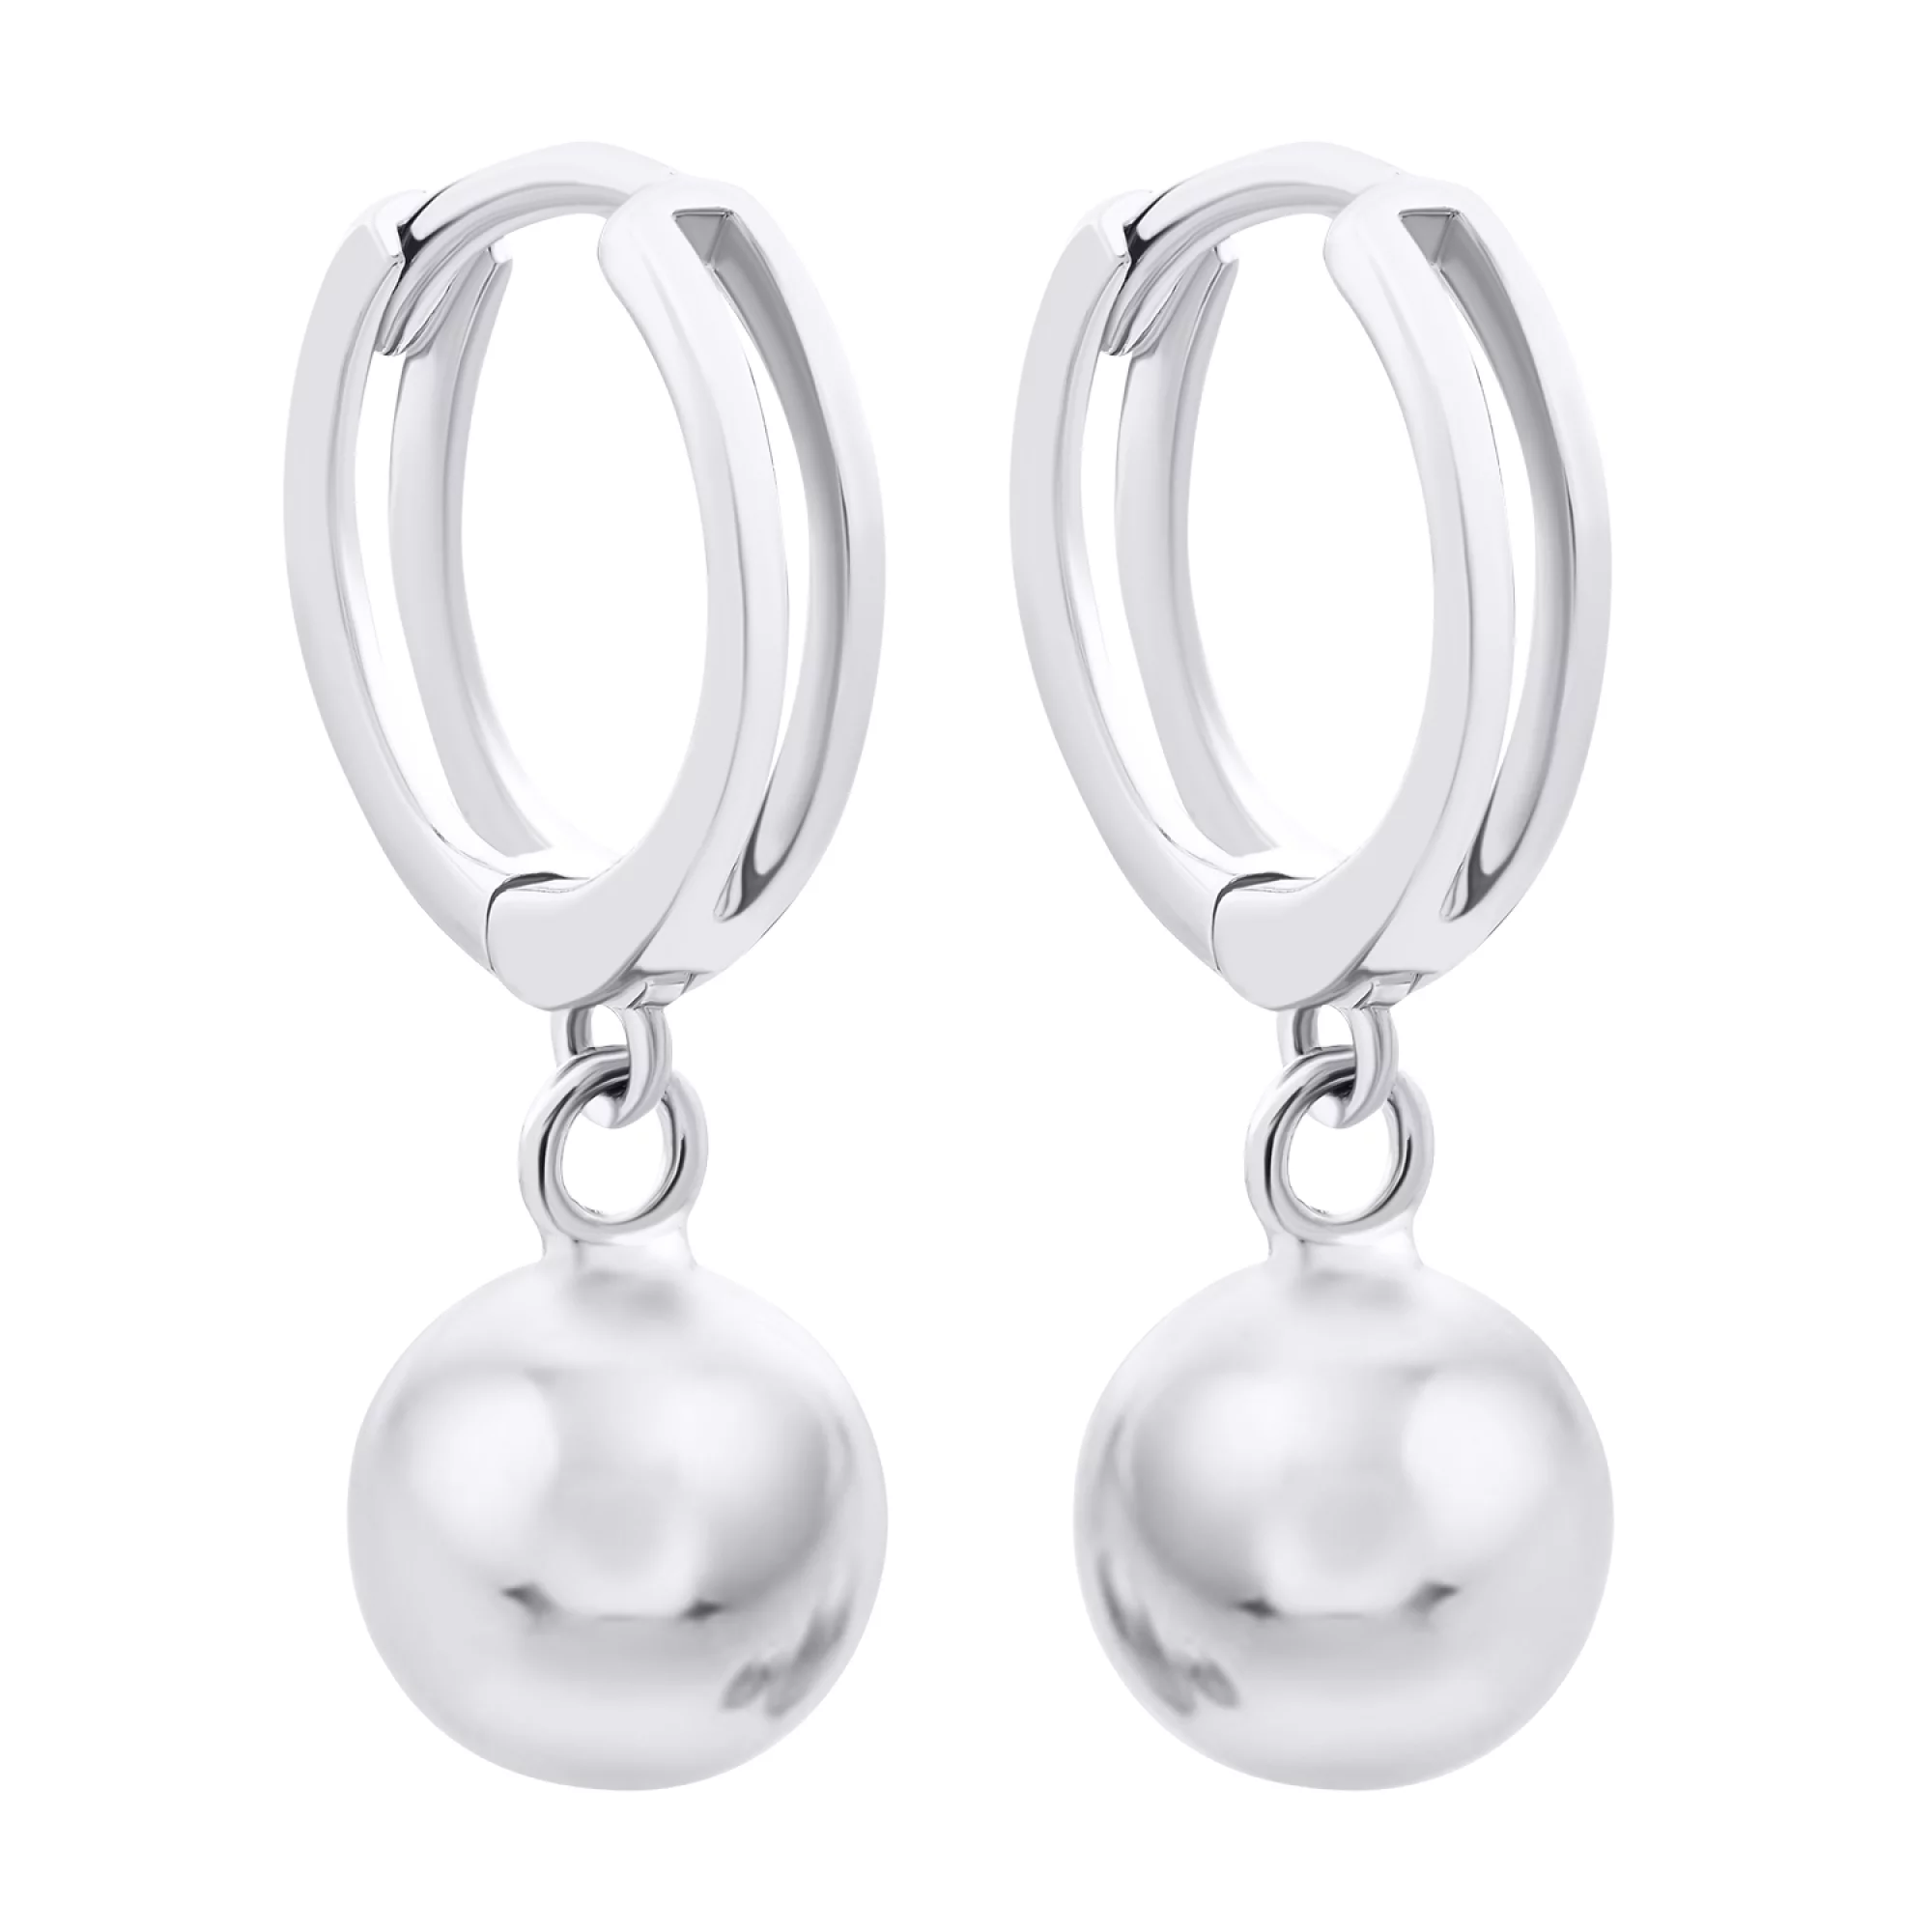 Срібні сережки-кільця з підвісками з кульок - 1521076 – зображення 1